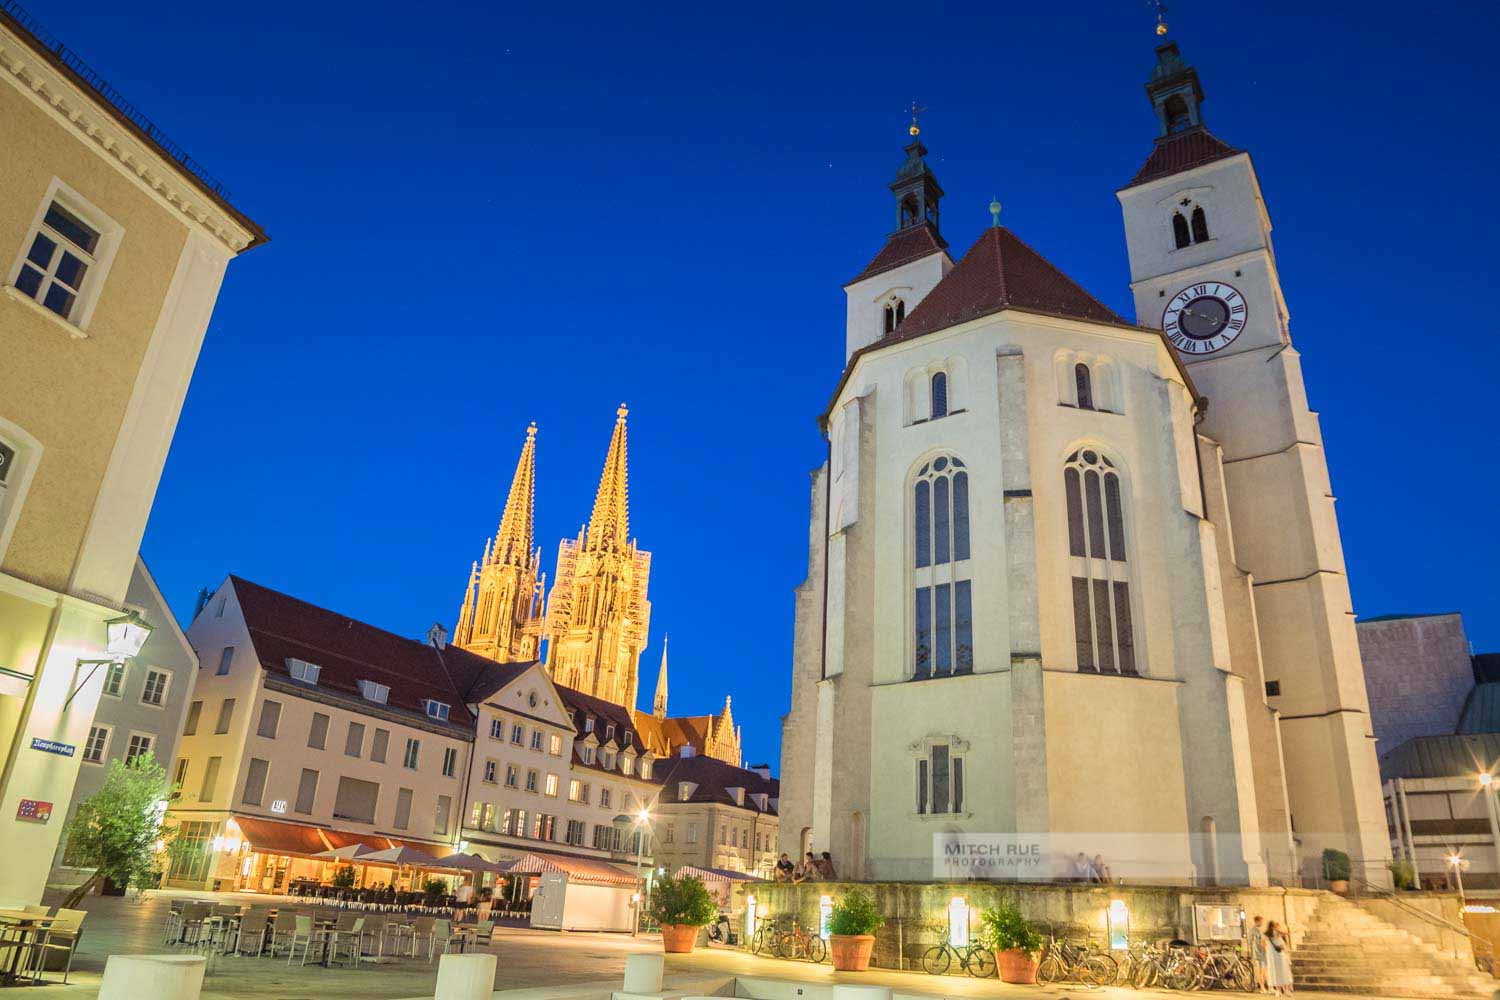 Sommernacht am Neupfarrplatz in Regensburg mit der Neupfarrkirche und dem Dom Sankt Peter